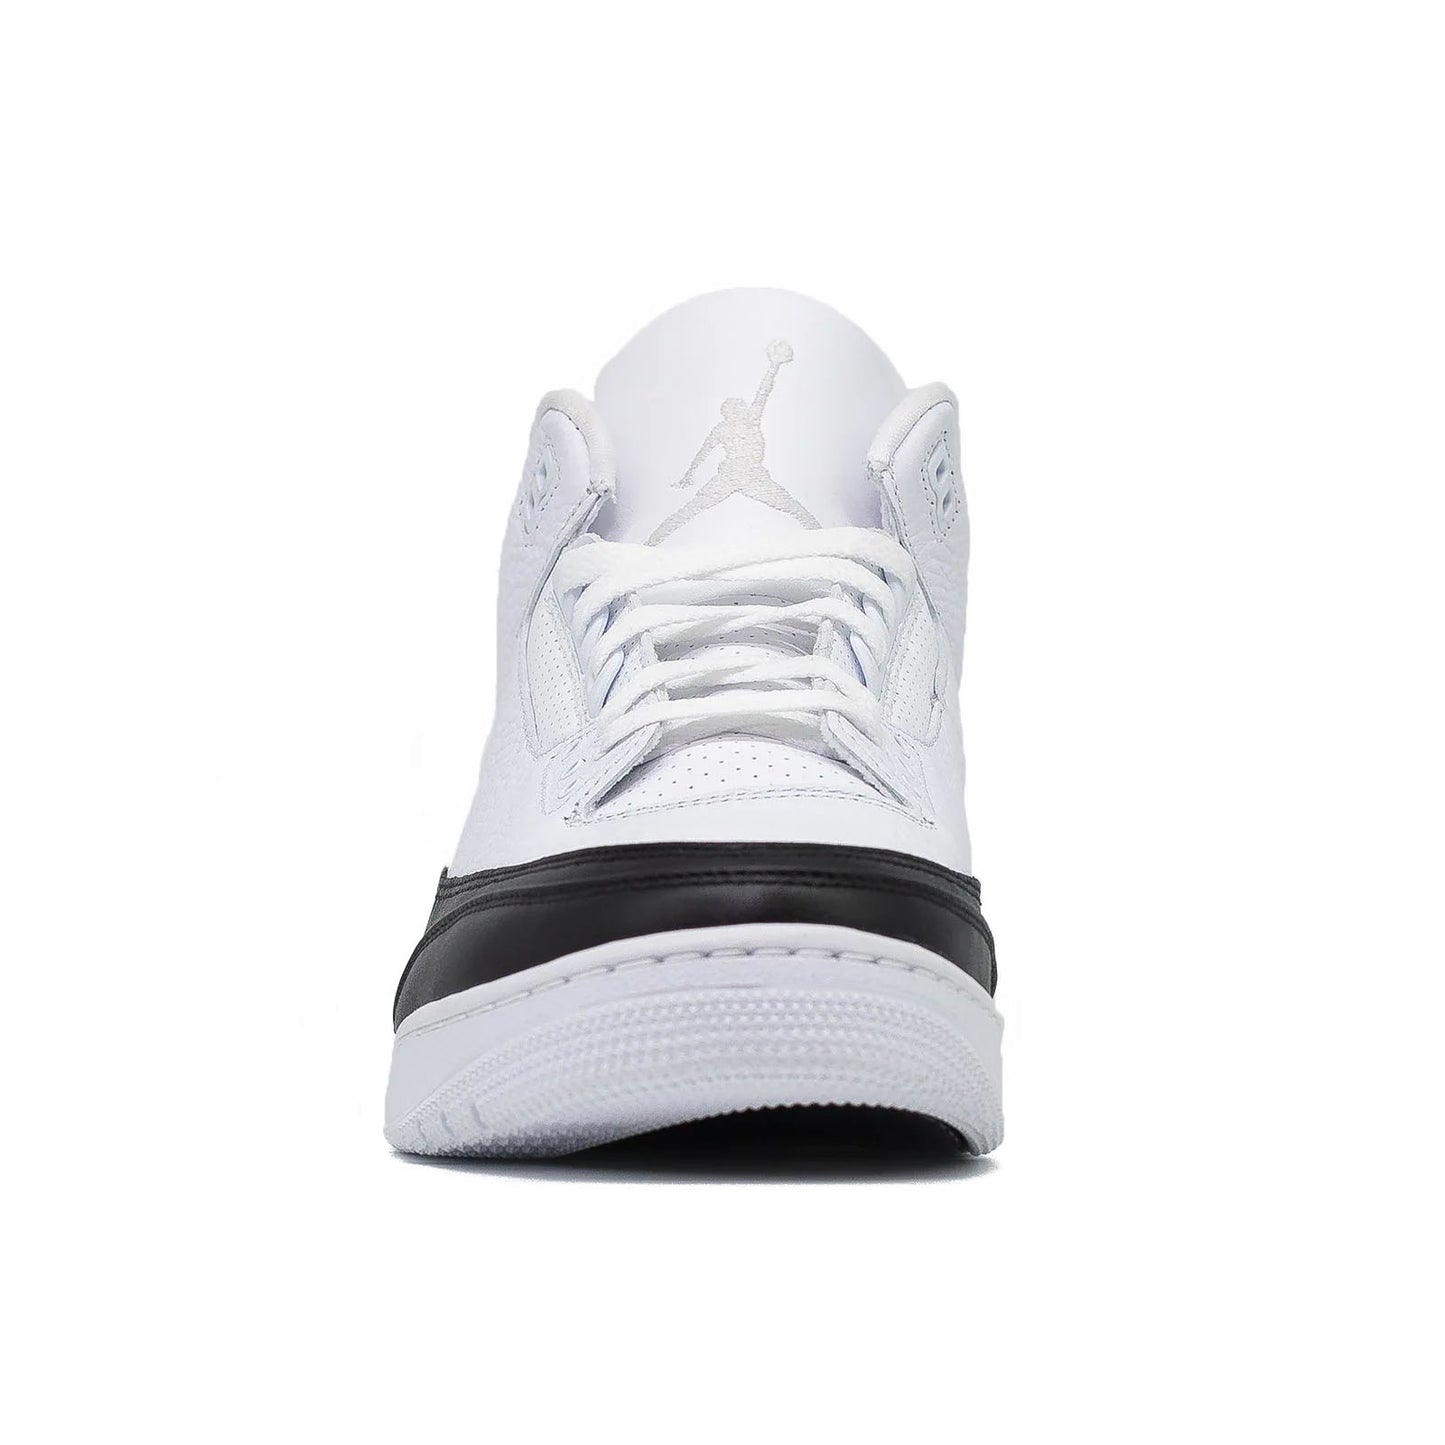 Air Jordan 3, Fragment Design SP White